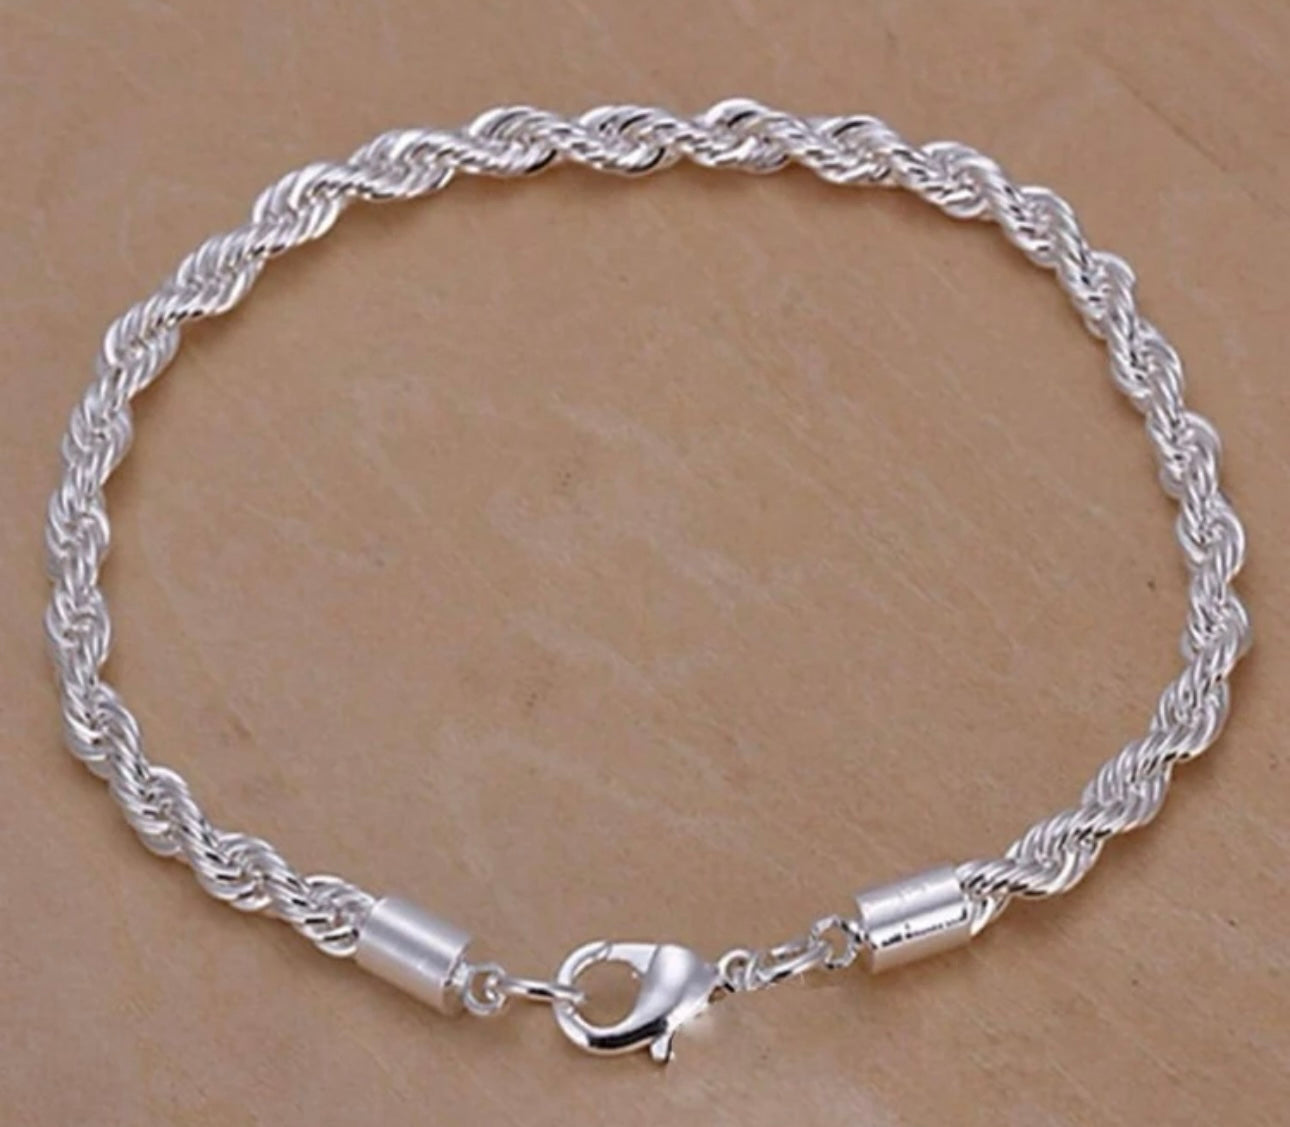 Silver twist bracelet